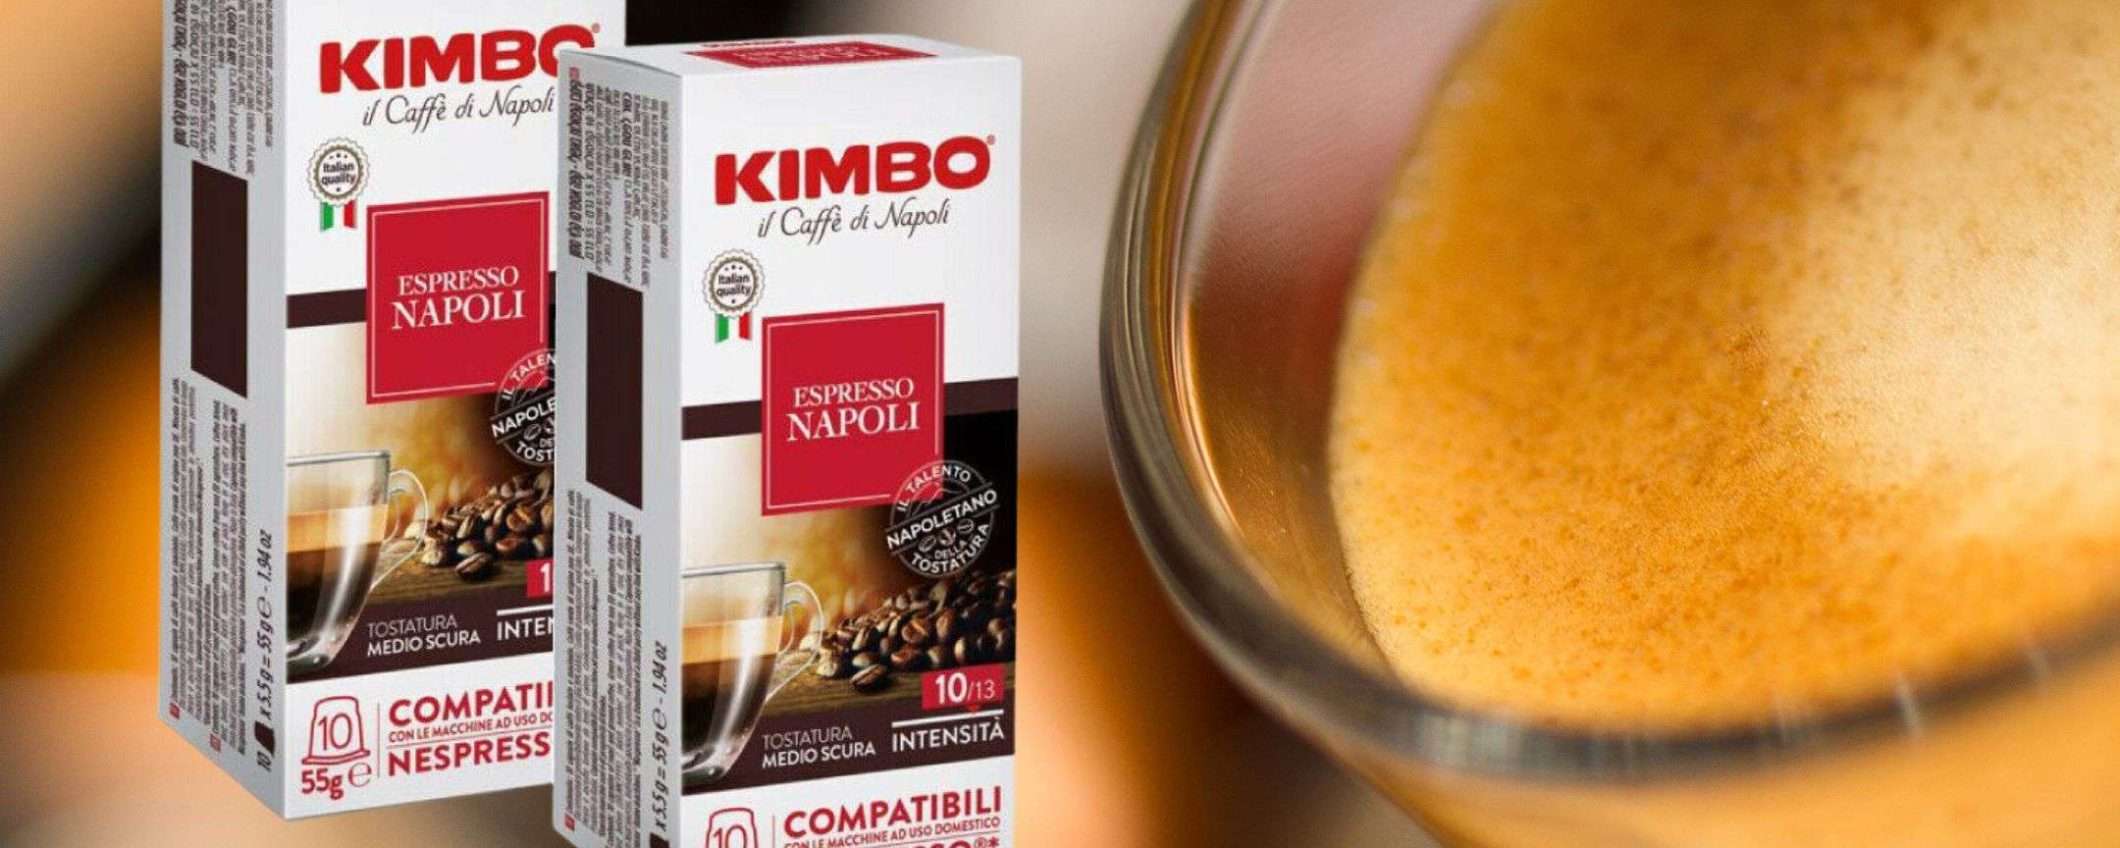 200 capsule caffè Kimbo Miscela Napoli a soli 32€ su eBay: sconto PAZZESCO!